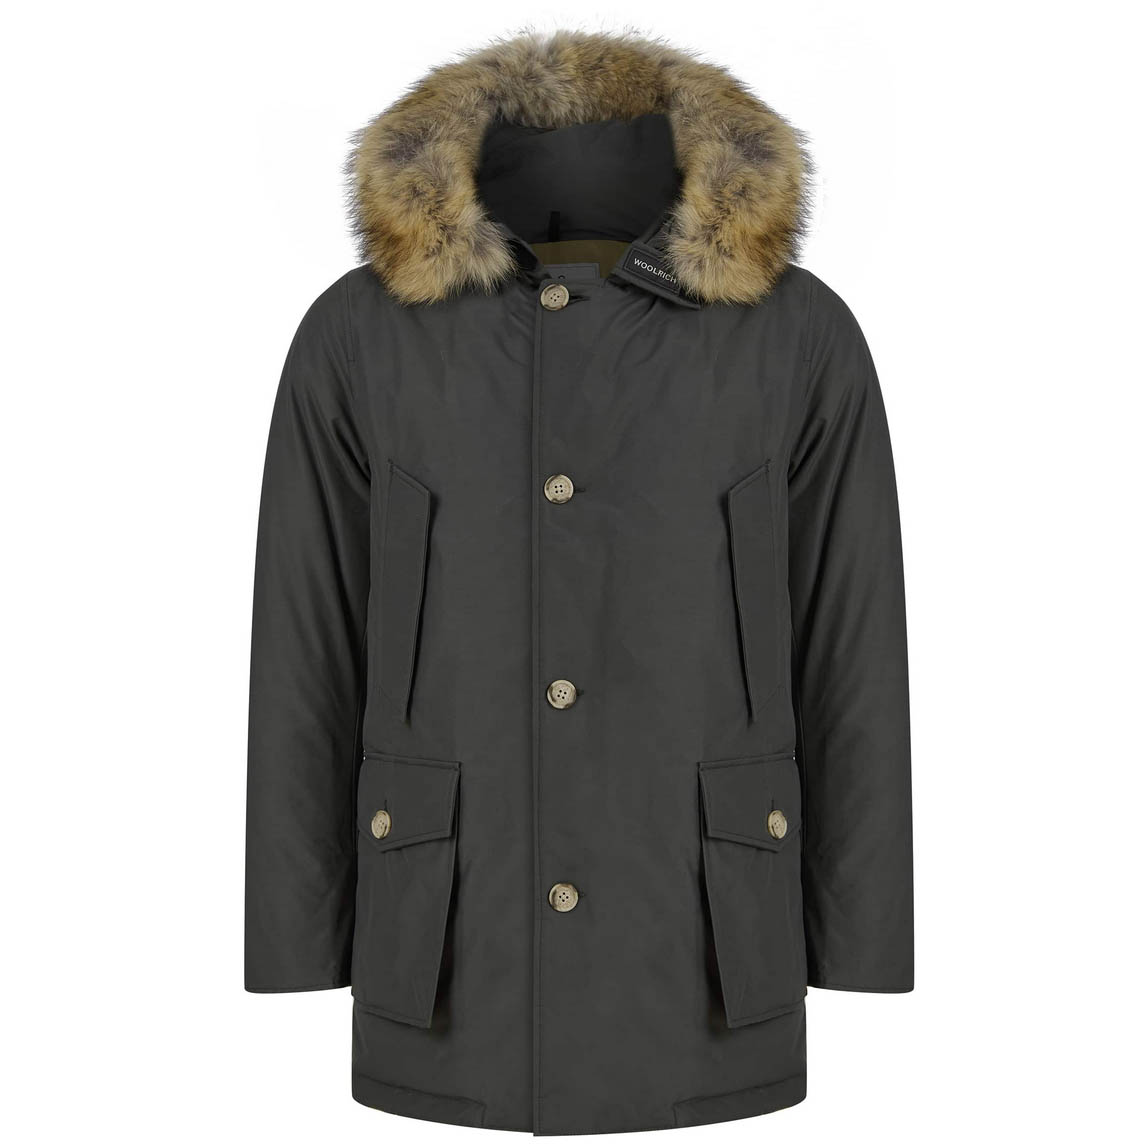 Medewerker kwaliteit Maakte zich klaar Woolrich Arctic Detachable Fur Down Filling Warm Winter Parka Coat Grey  Shadow | eBay